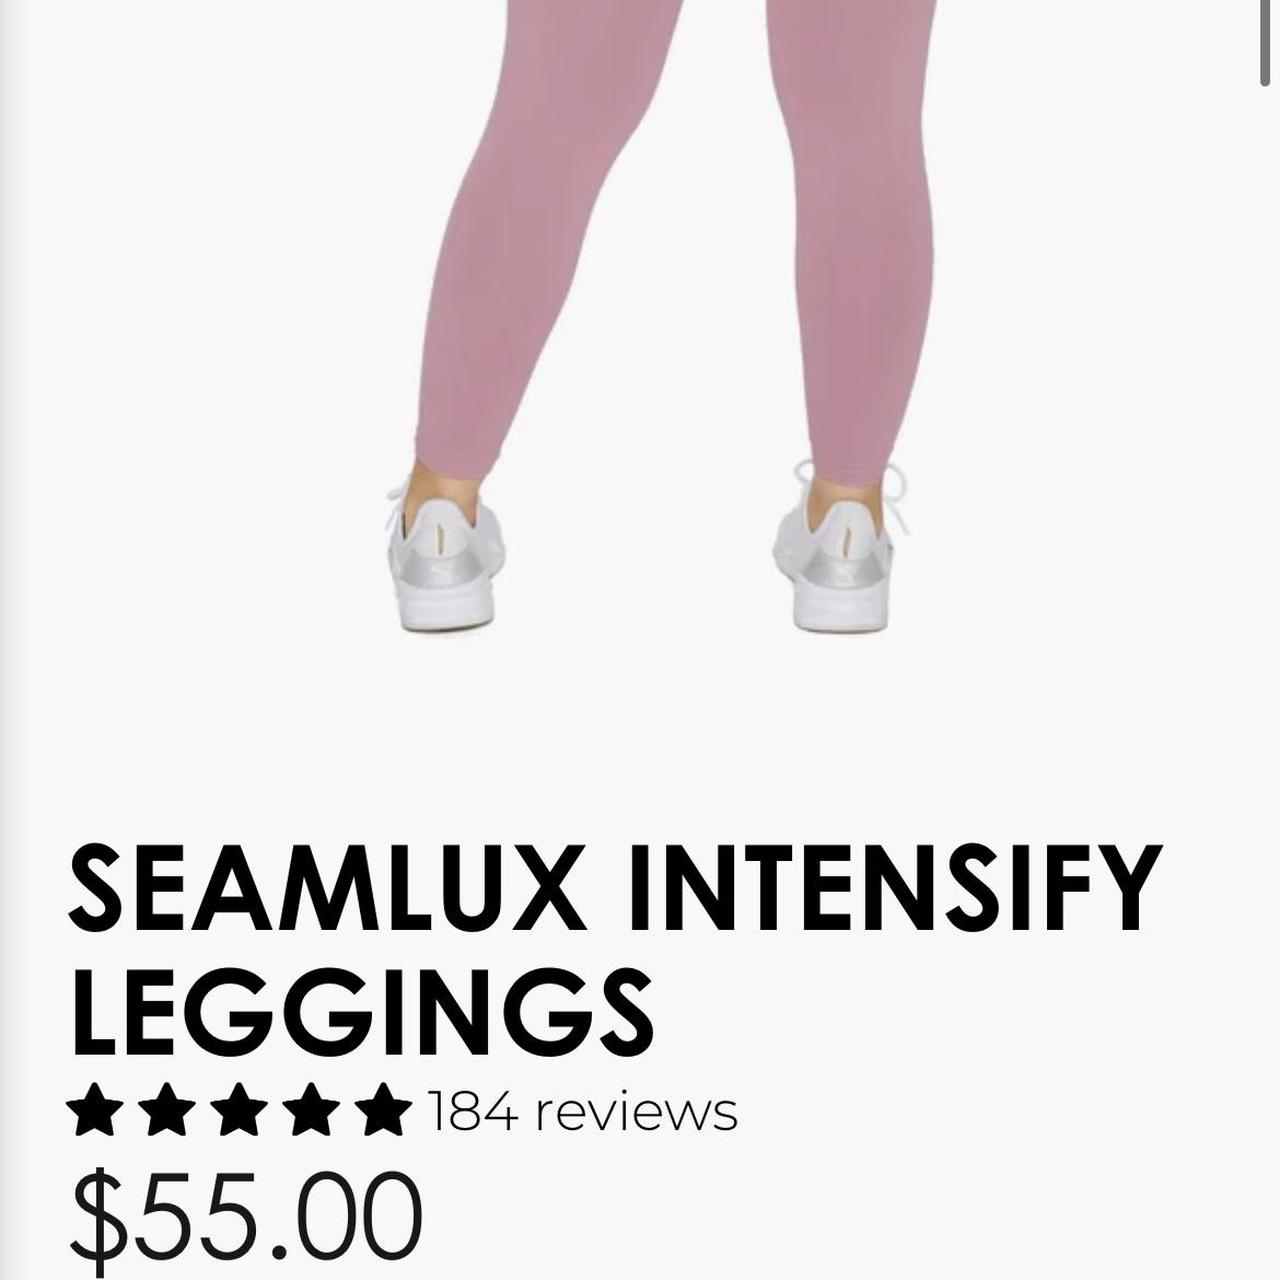 ILUS LABEL seamlux intensify leggings in pink - Depop